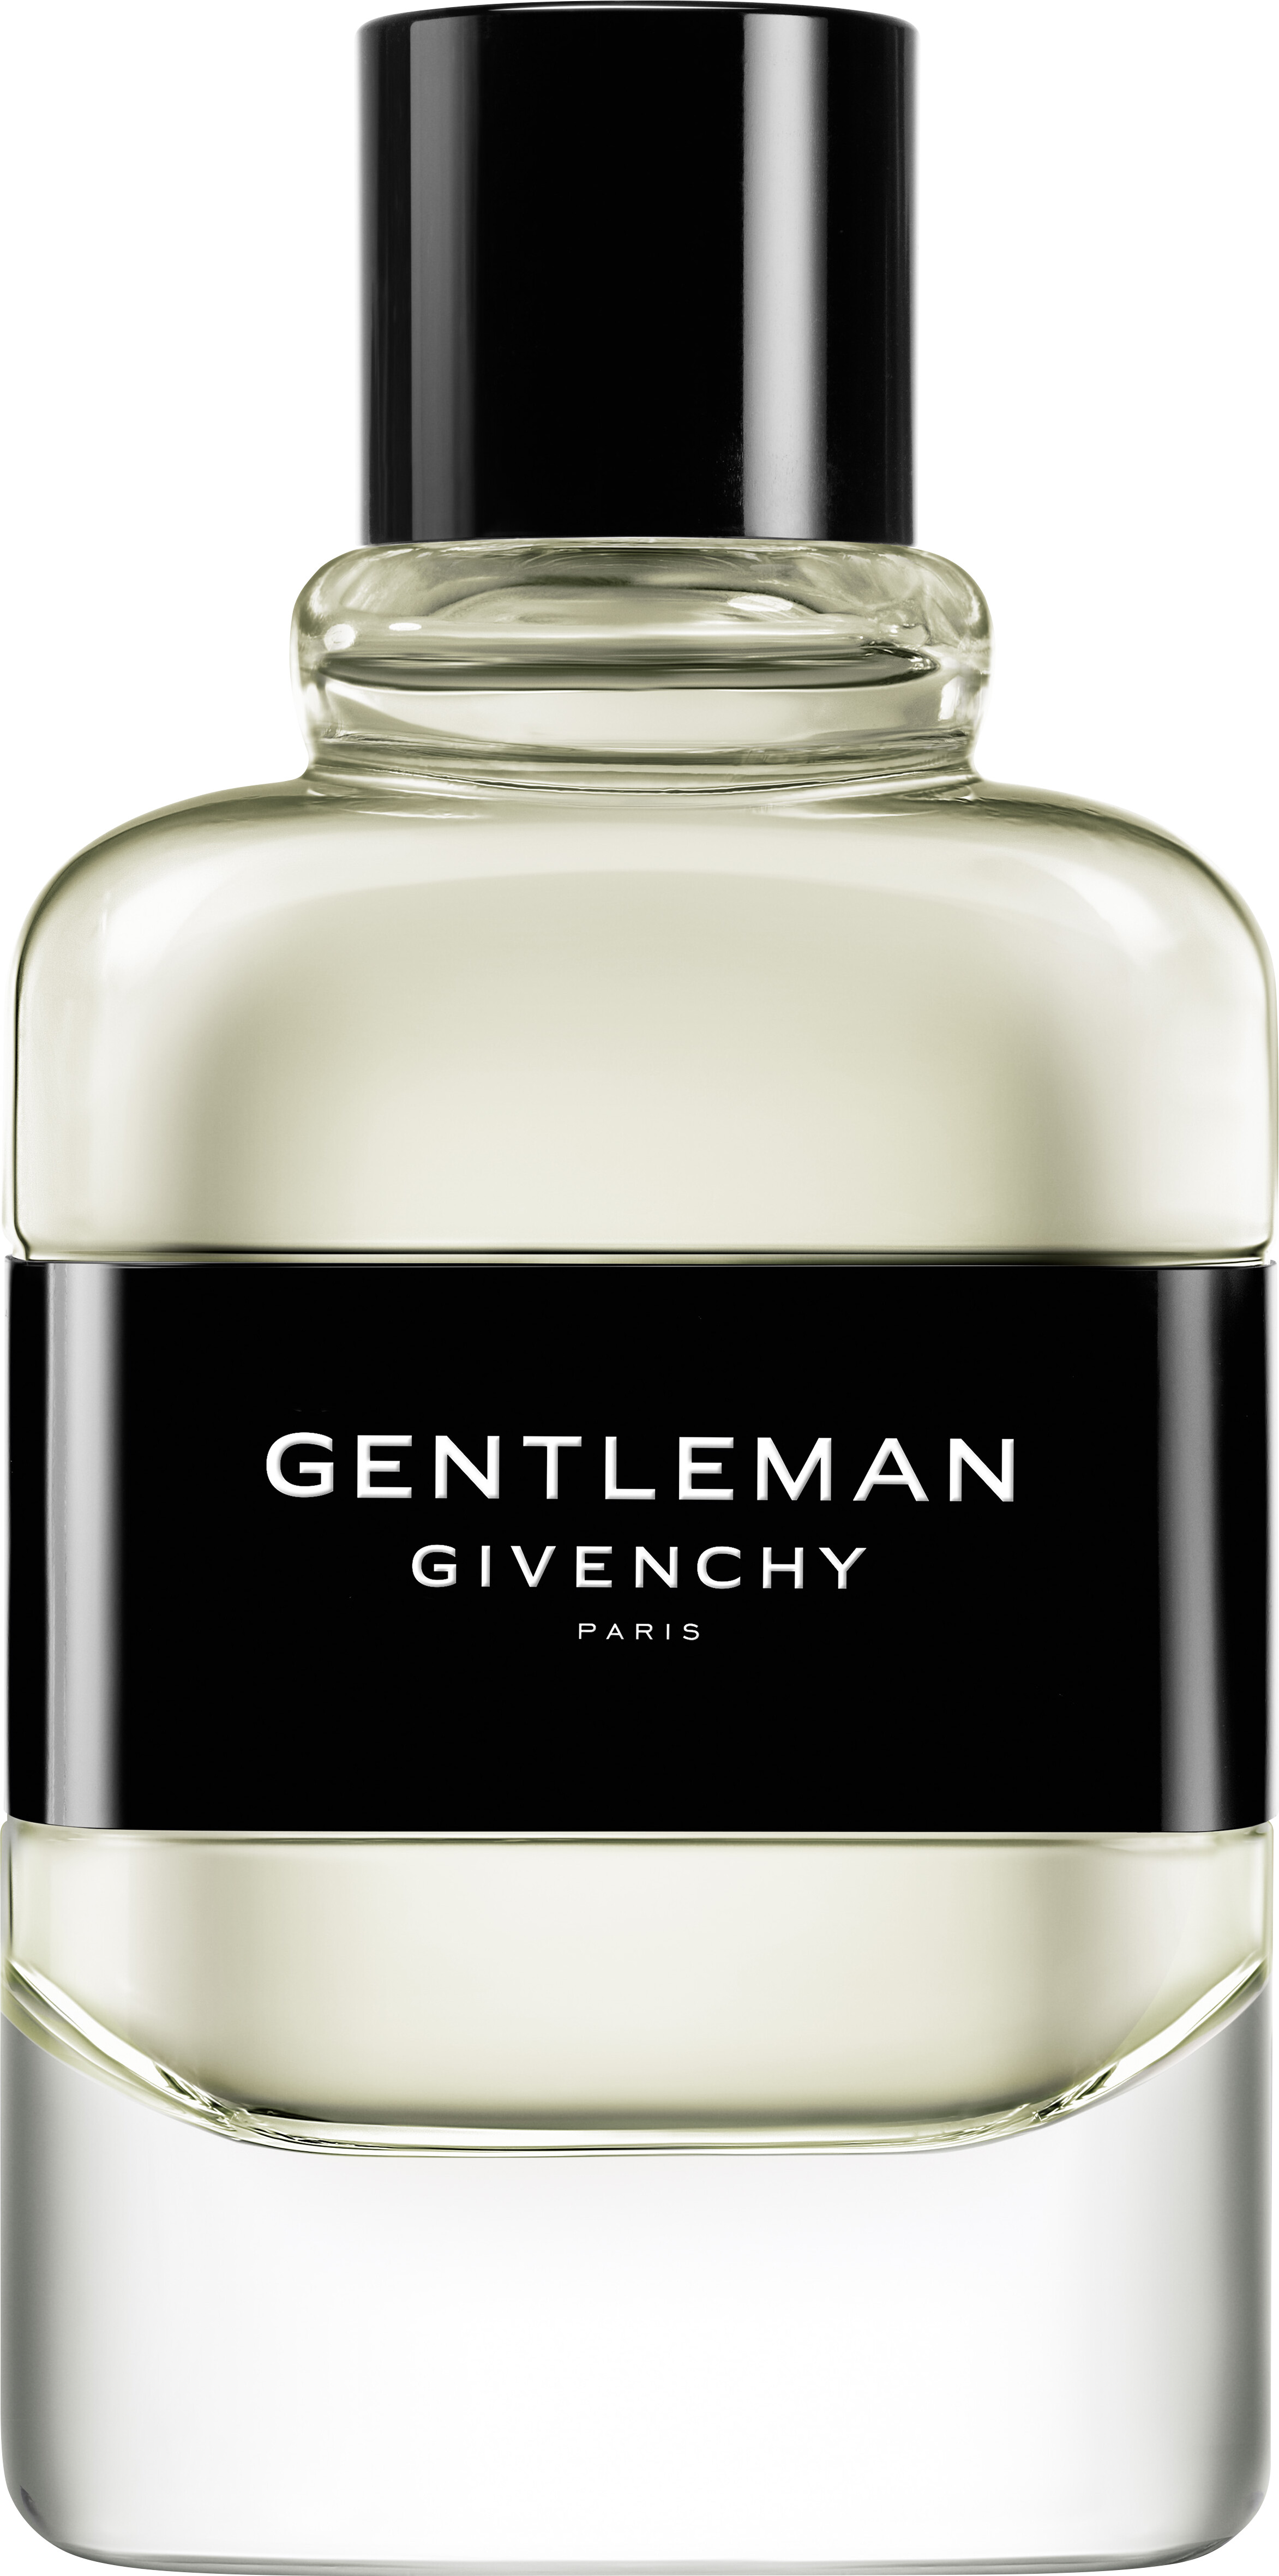 givenchy gentleman eau de parfum 50ml